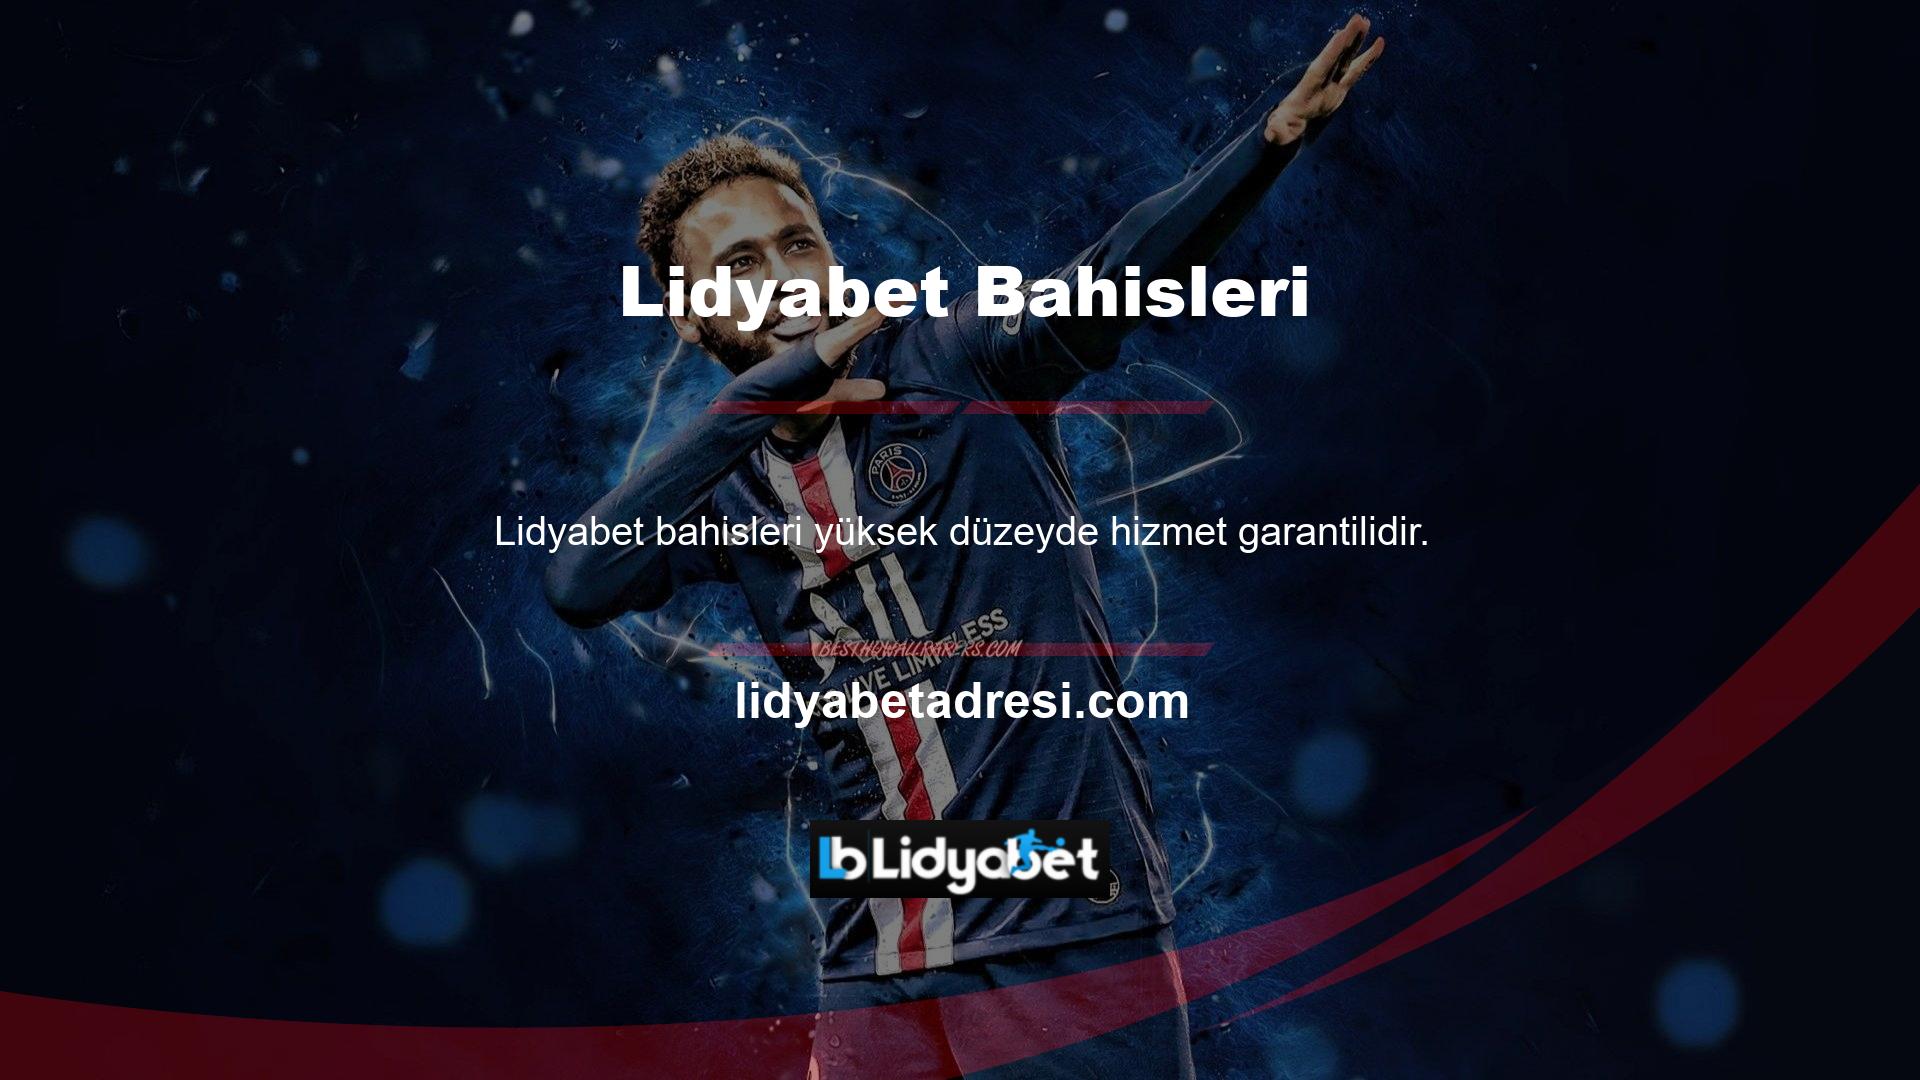 Lidyabet web sitesinin oyun dünyasına sunacağı çok şey var